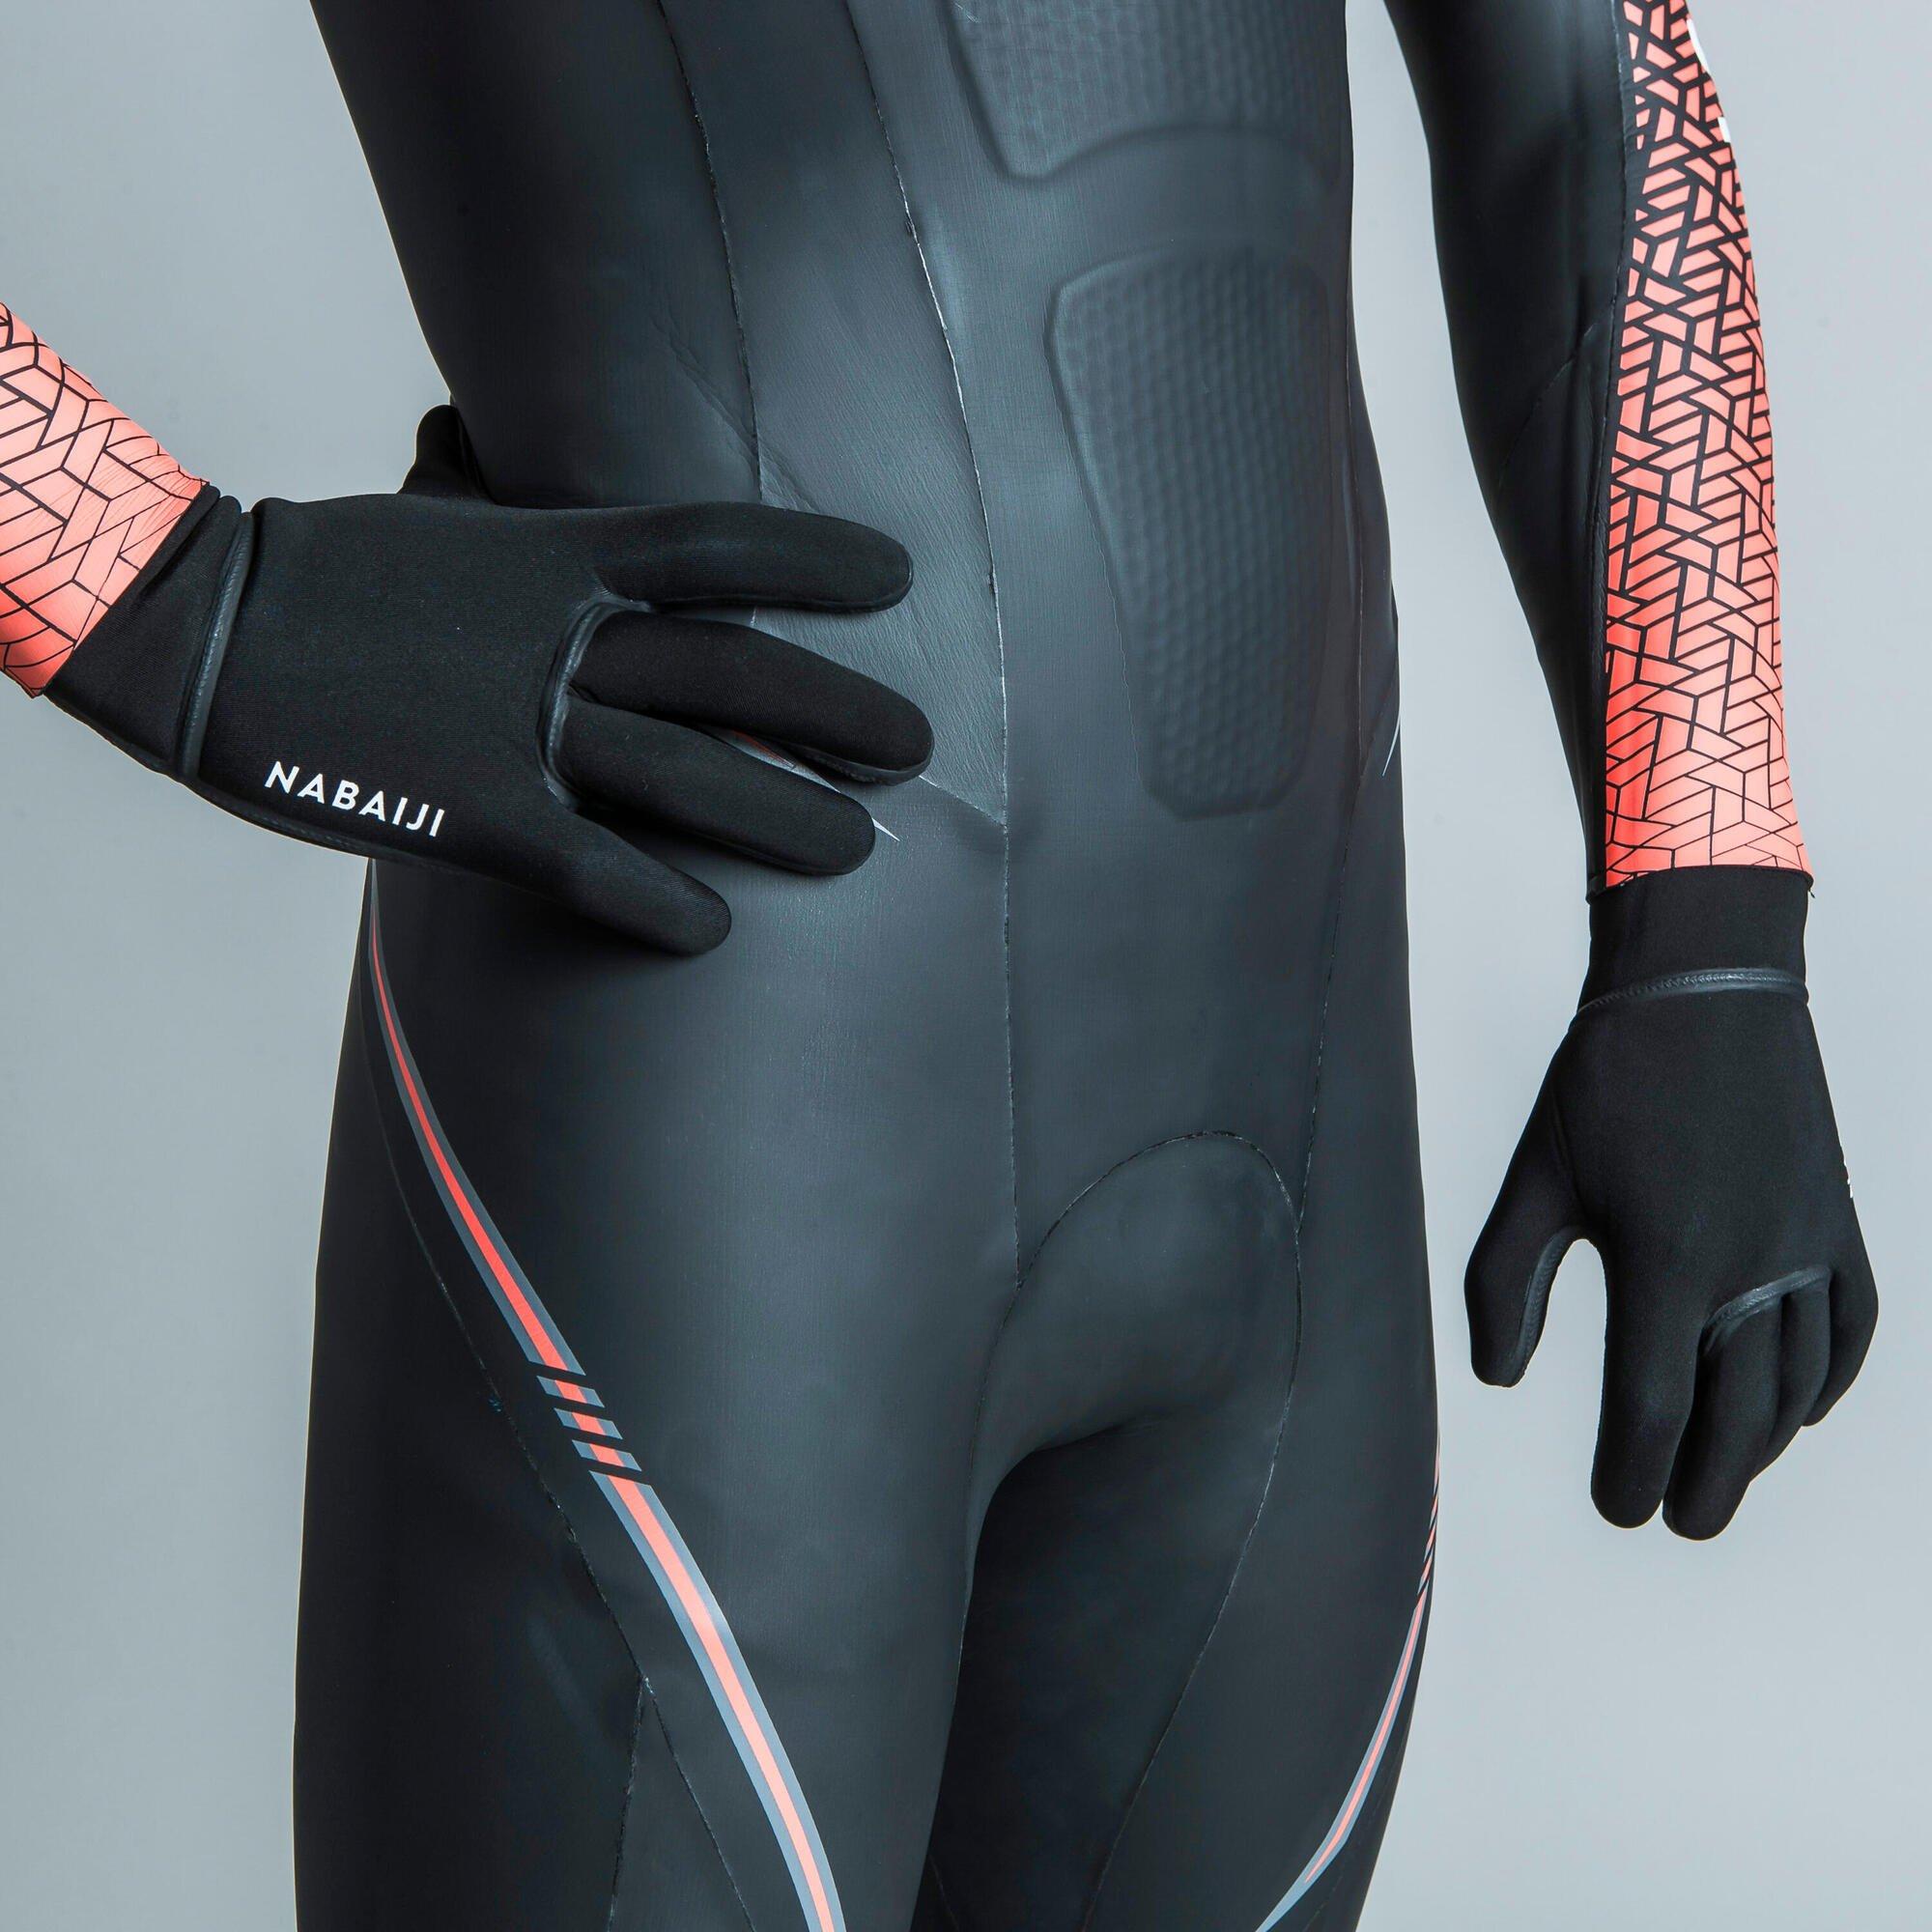 Неопреновые перчатки для плавания Decathlon Nabaiji, черный перчатки для дайвинга 3 мм неопреновые нескользящие перчатки для дайвинга теплые перчатки для плавания перчатки для подводной охоты серф